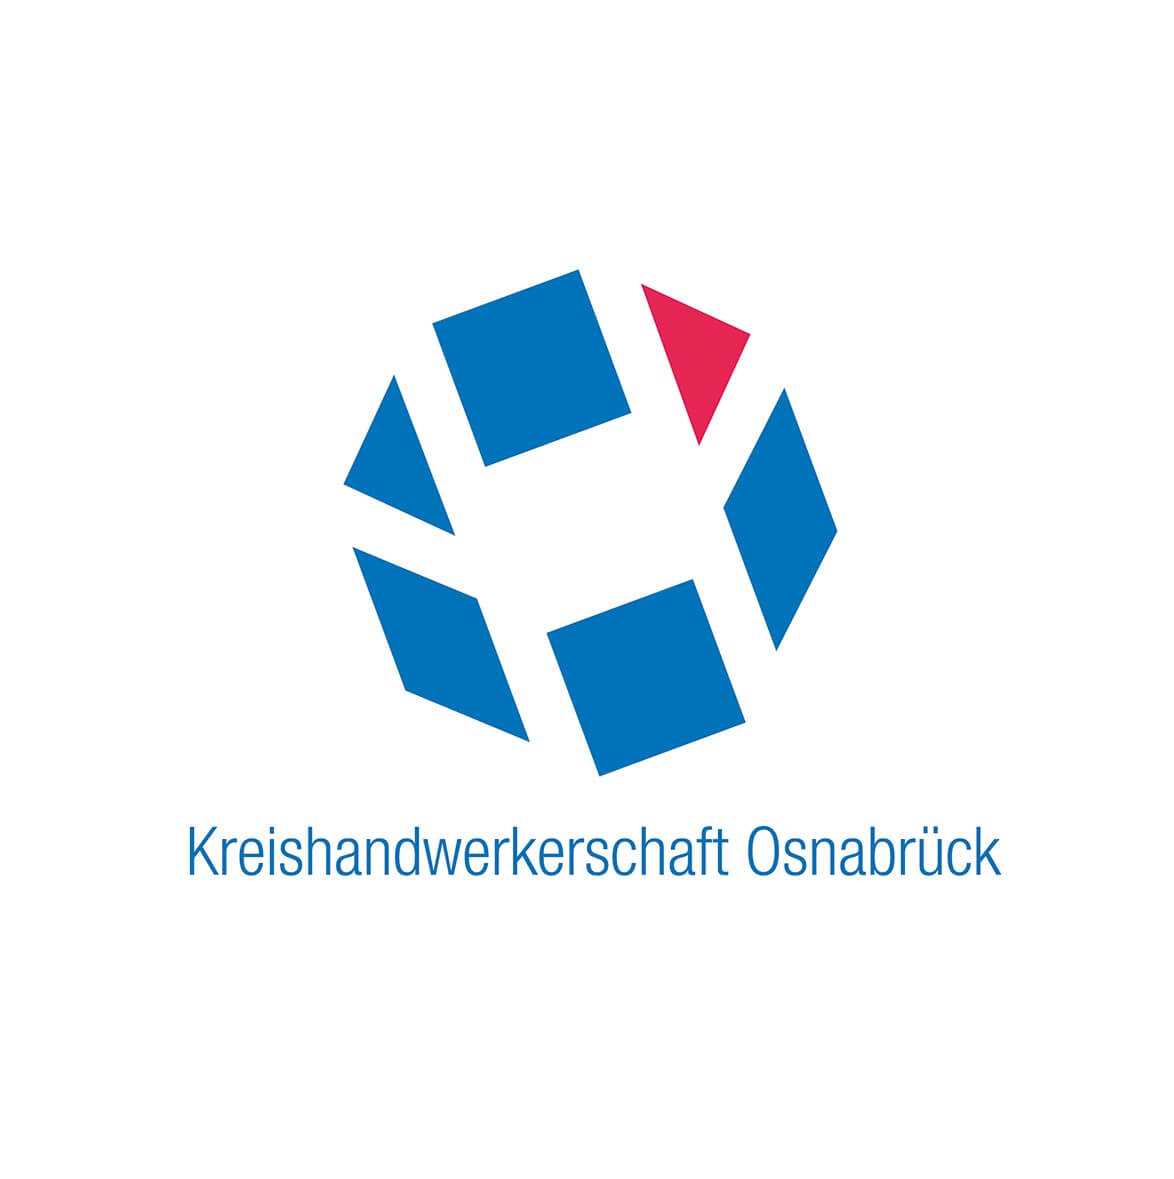 Kreishandwerkerschaft Osnabrück